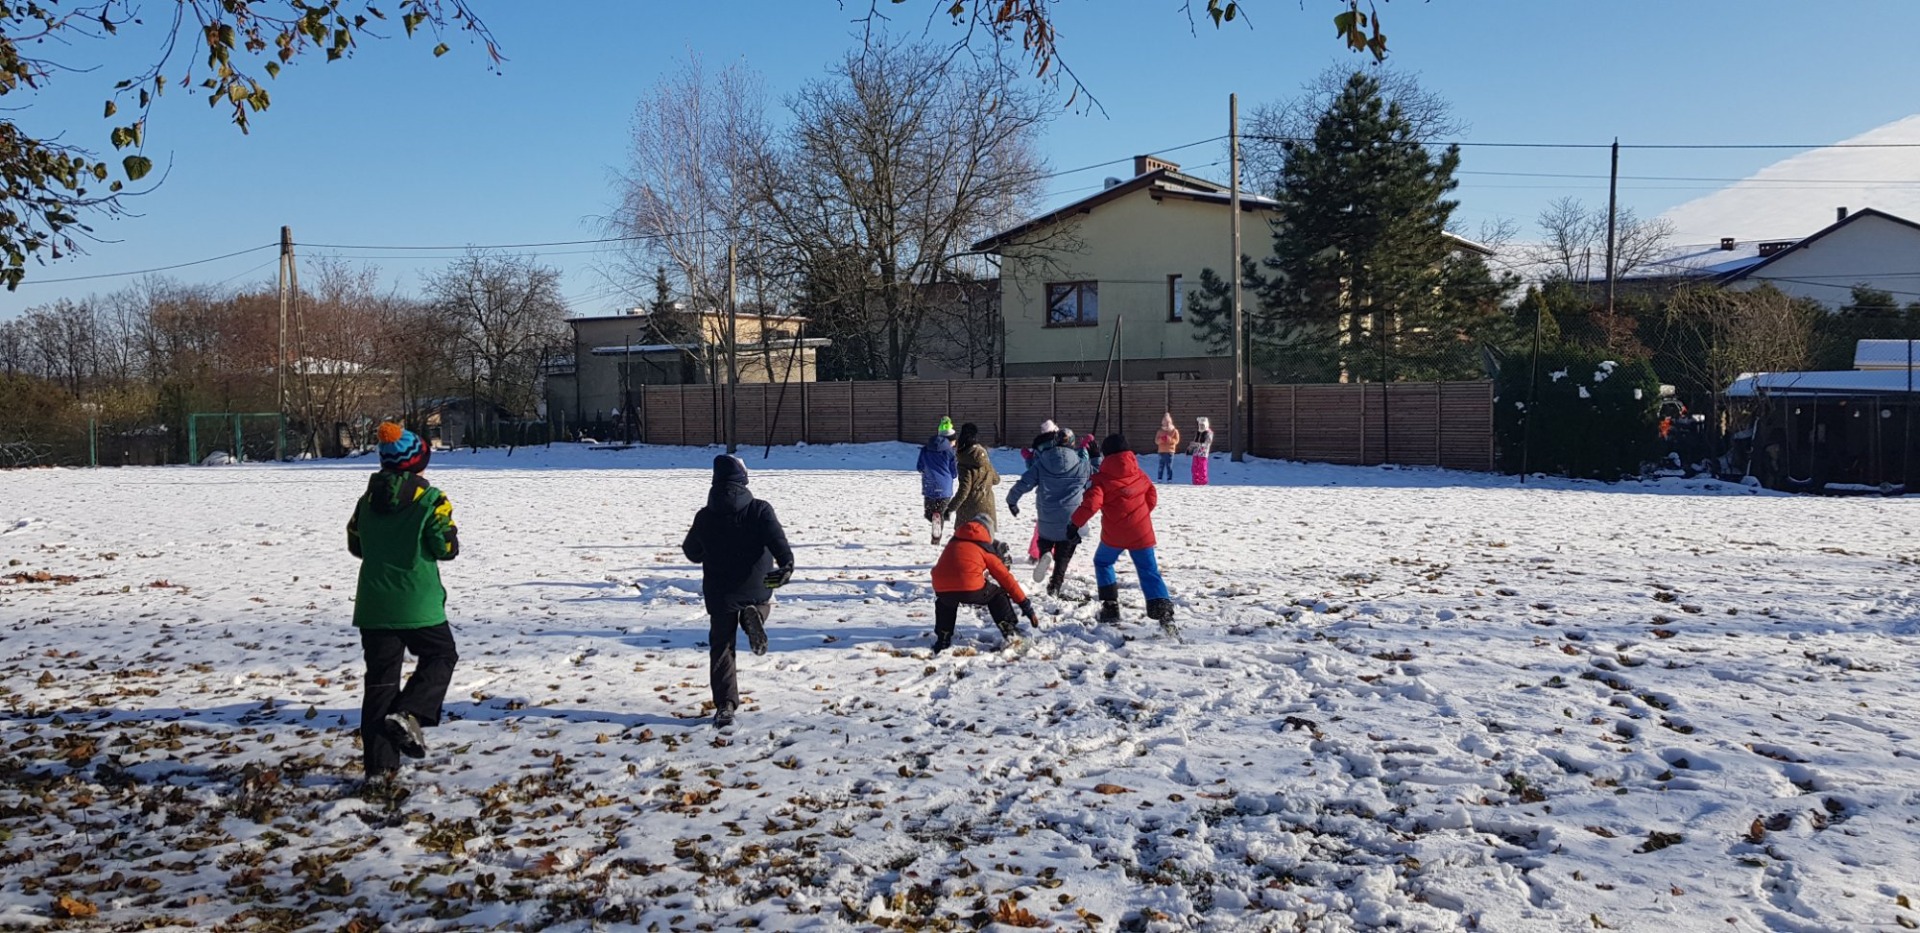 Uczniowie w zimowych ubraniach rzucają się śnieżkami